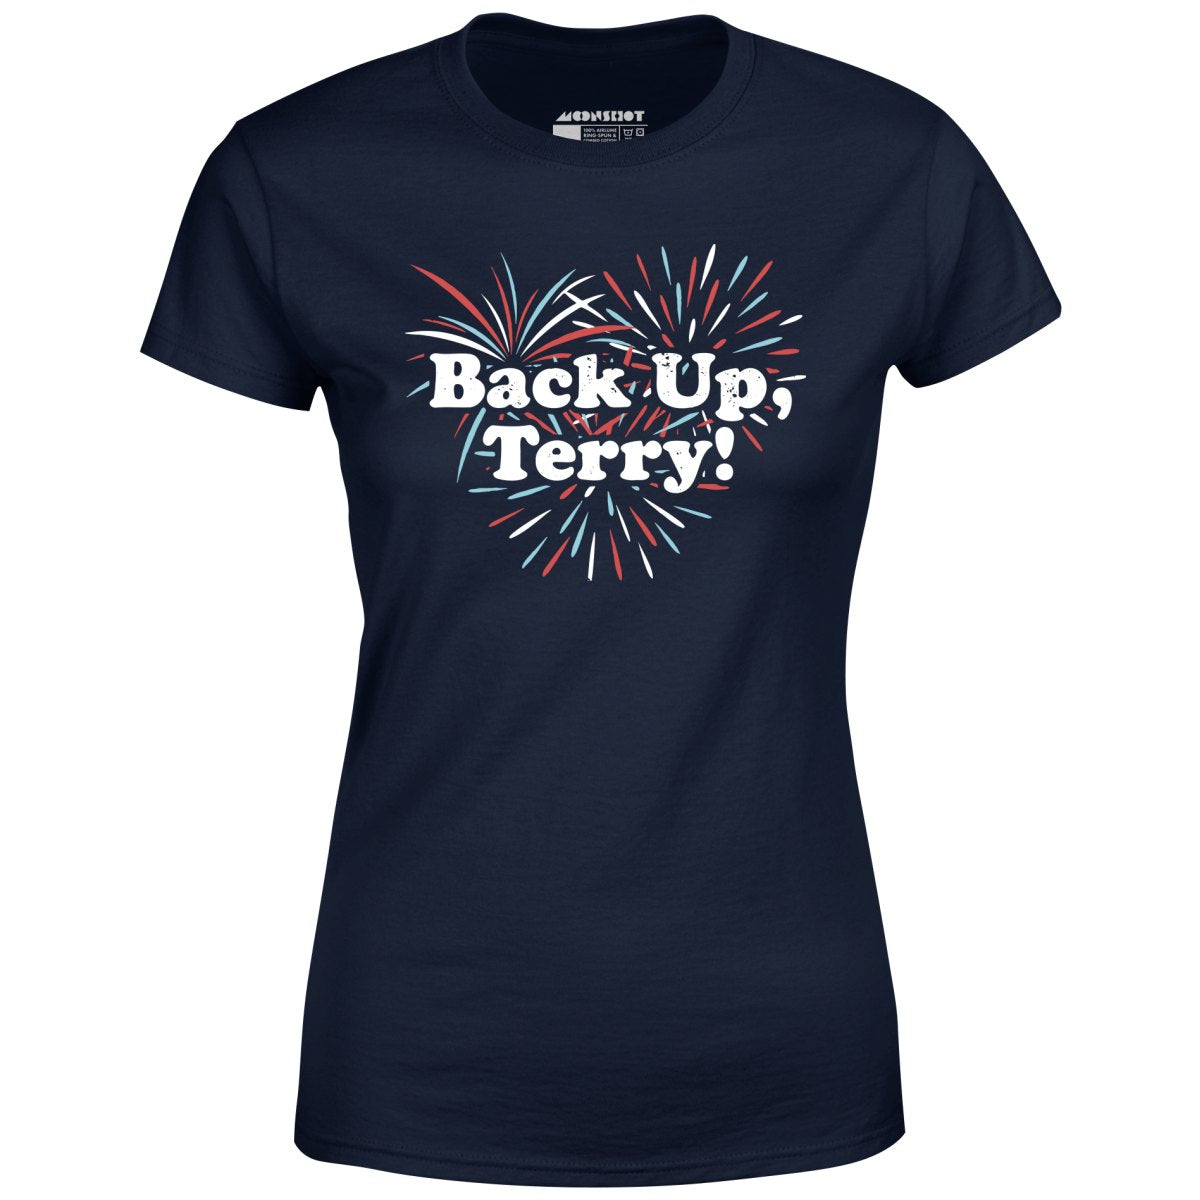 Back Up, Terry! - Women's T-Shirt